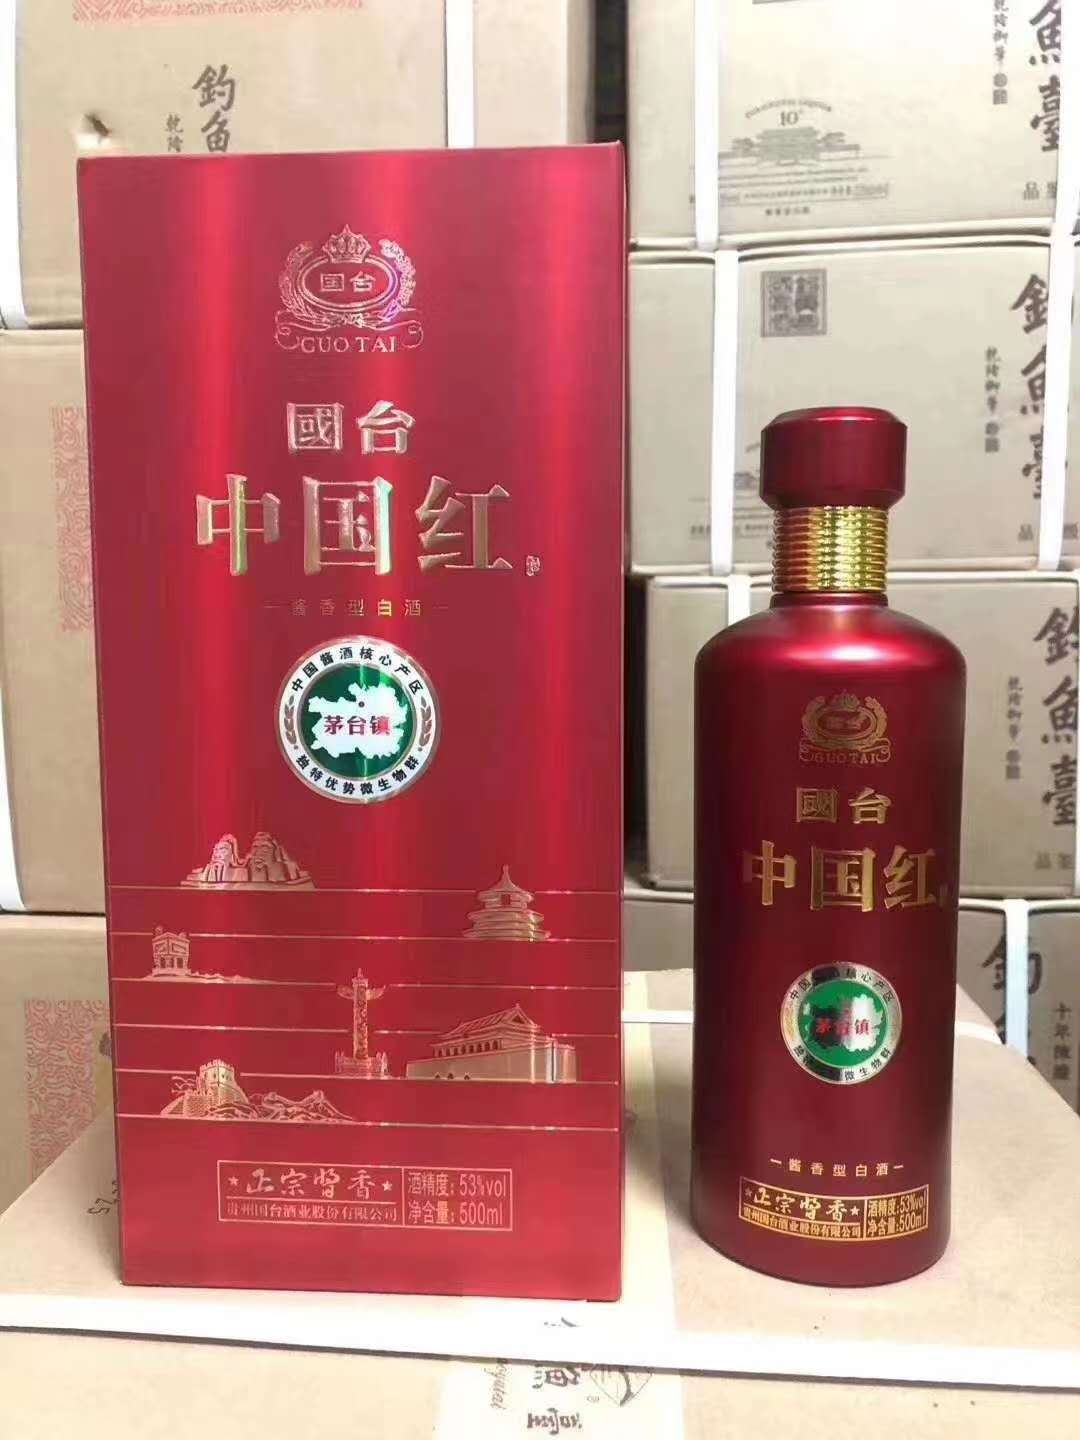 国台中国红 53度酱香 国台酒系列产品 迈通酒业批发